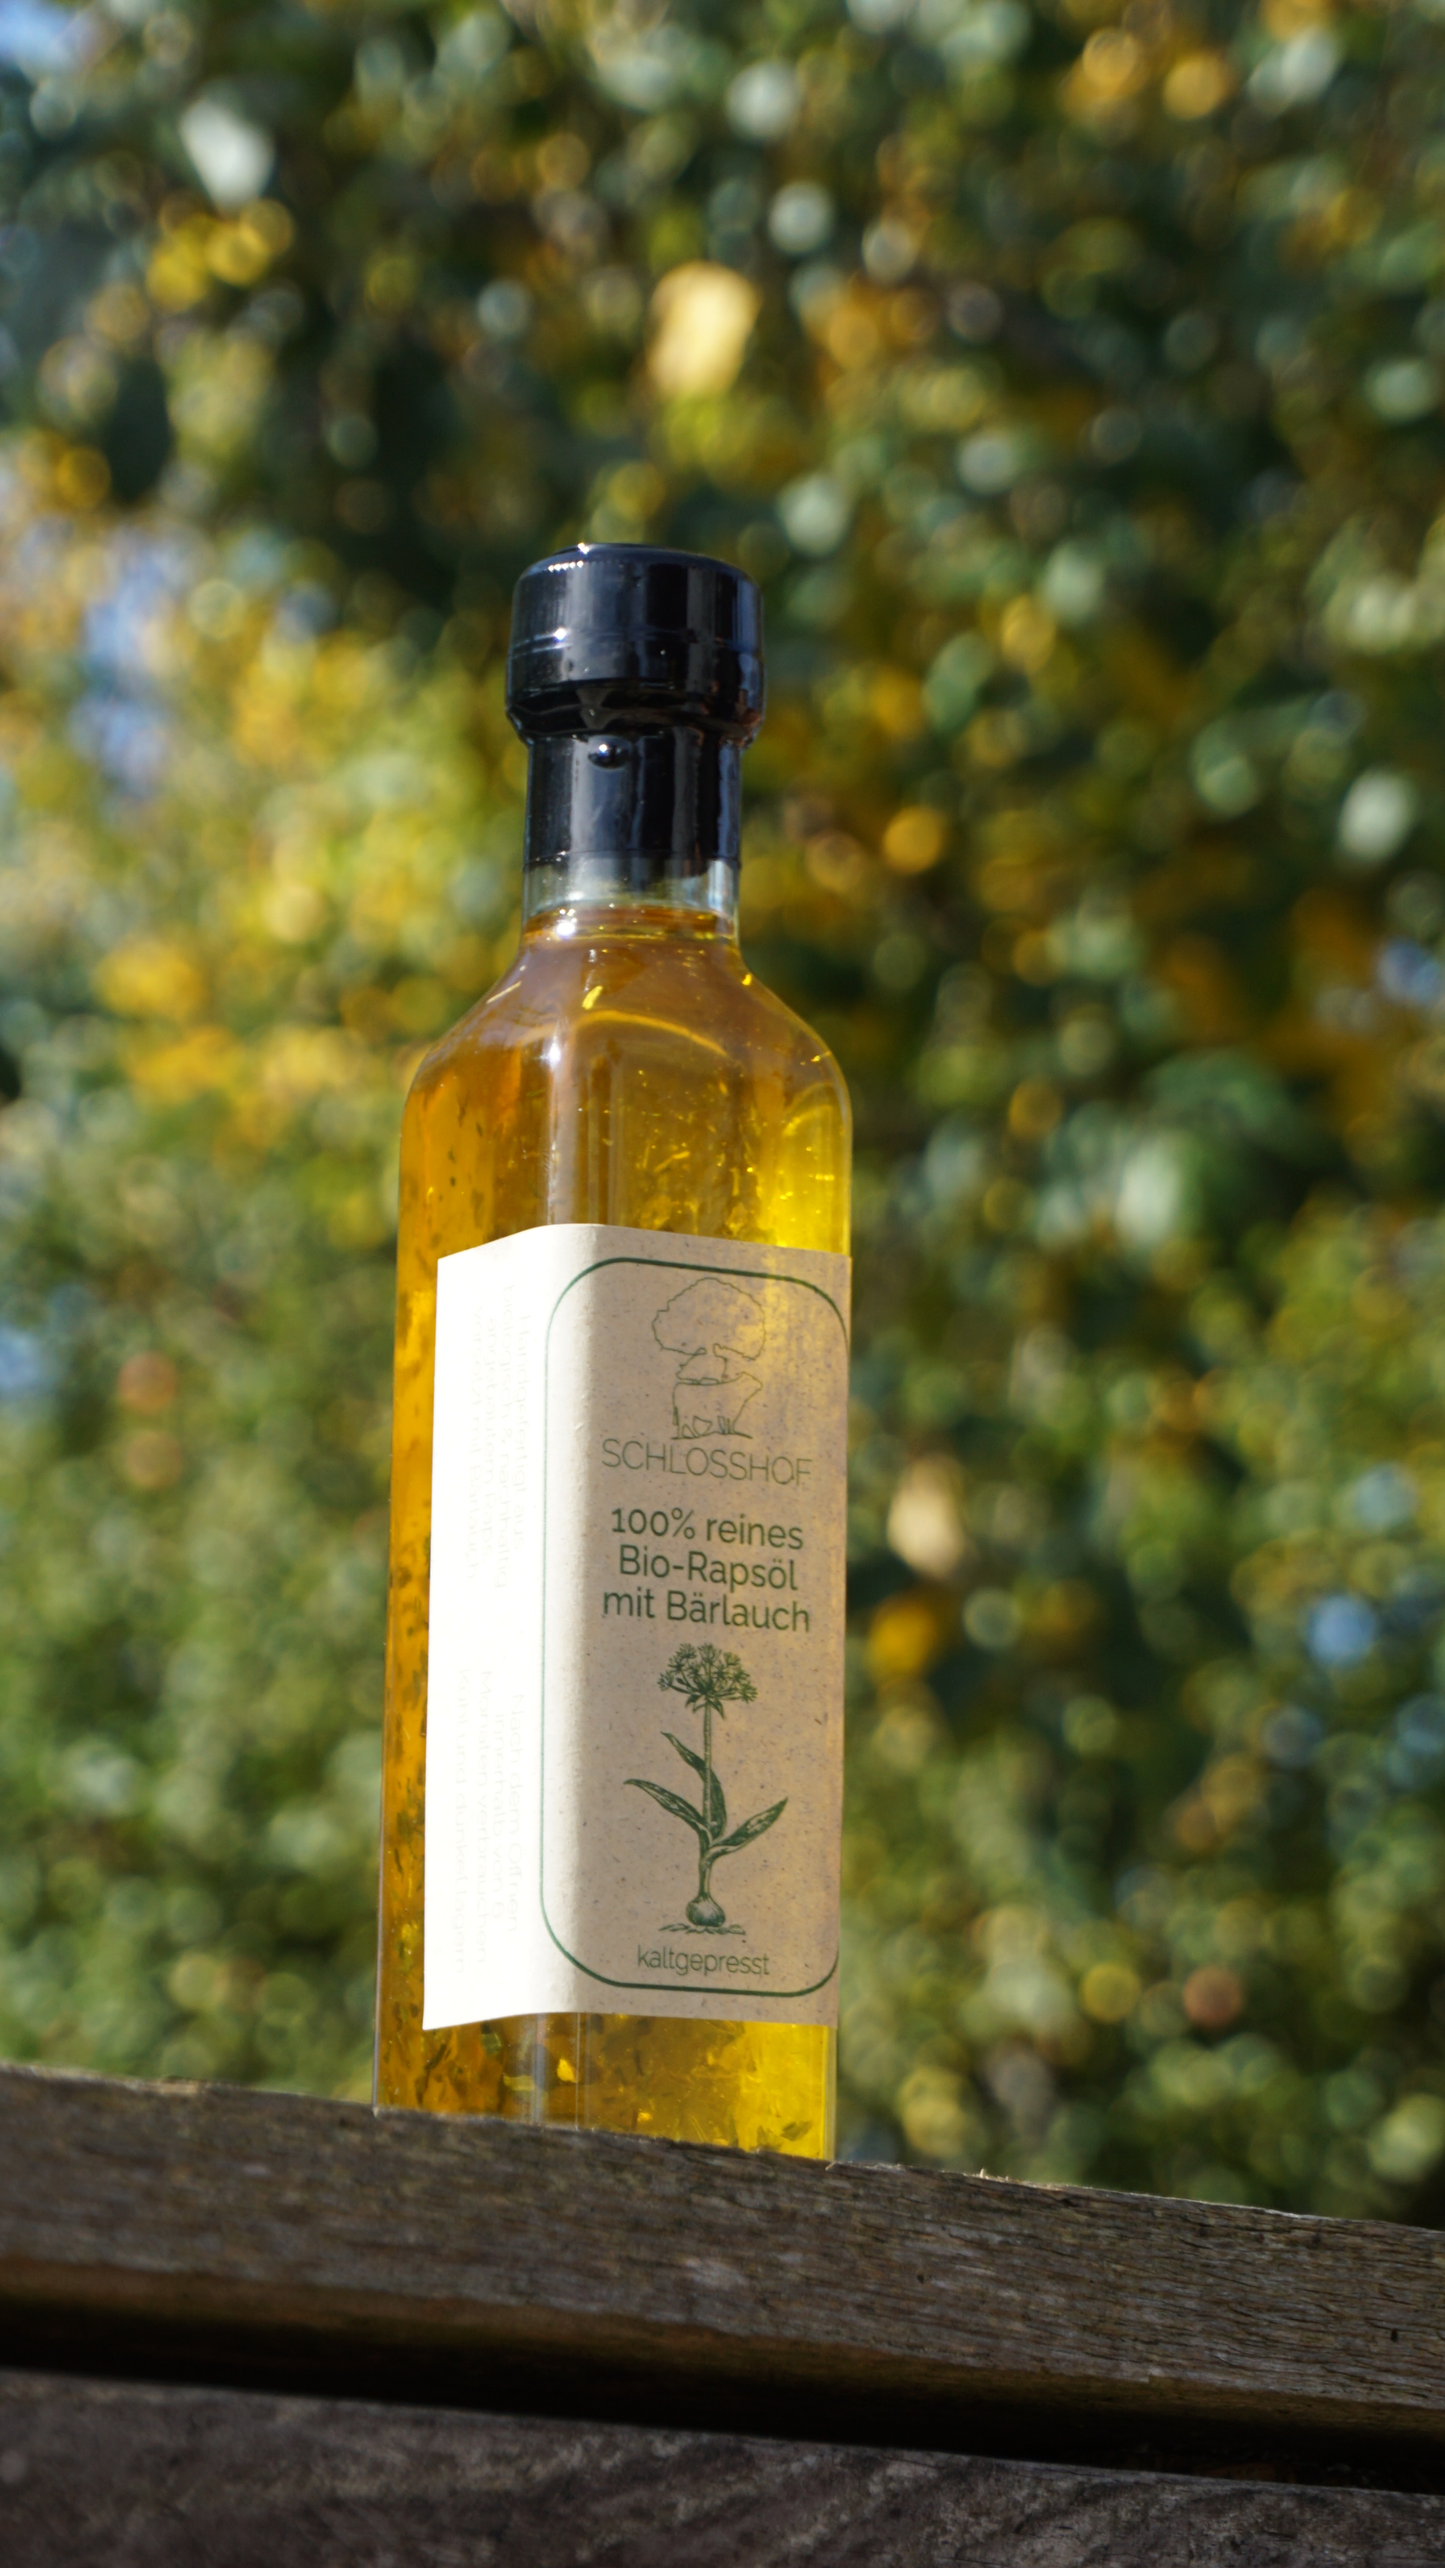 Reines Bio-Rapsöl verfeinert mit Bärlauch. Handgefertigt, nachhaltig, vegan, biologisch angebaut. Direkt vom Bauernhof